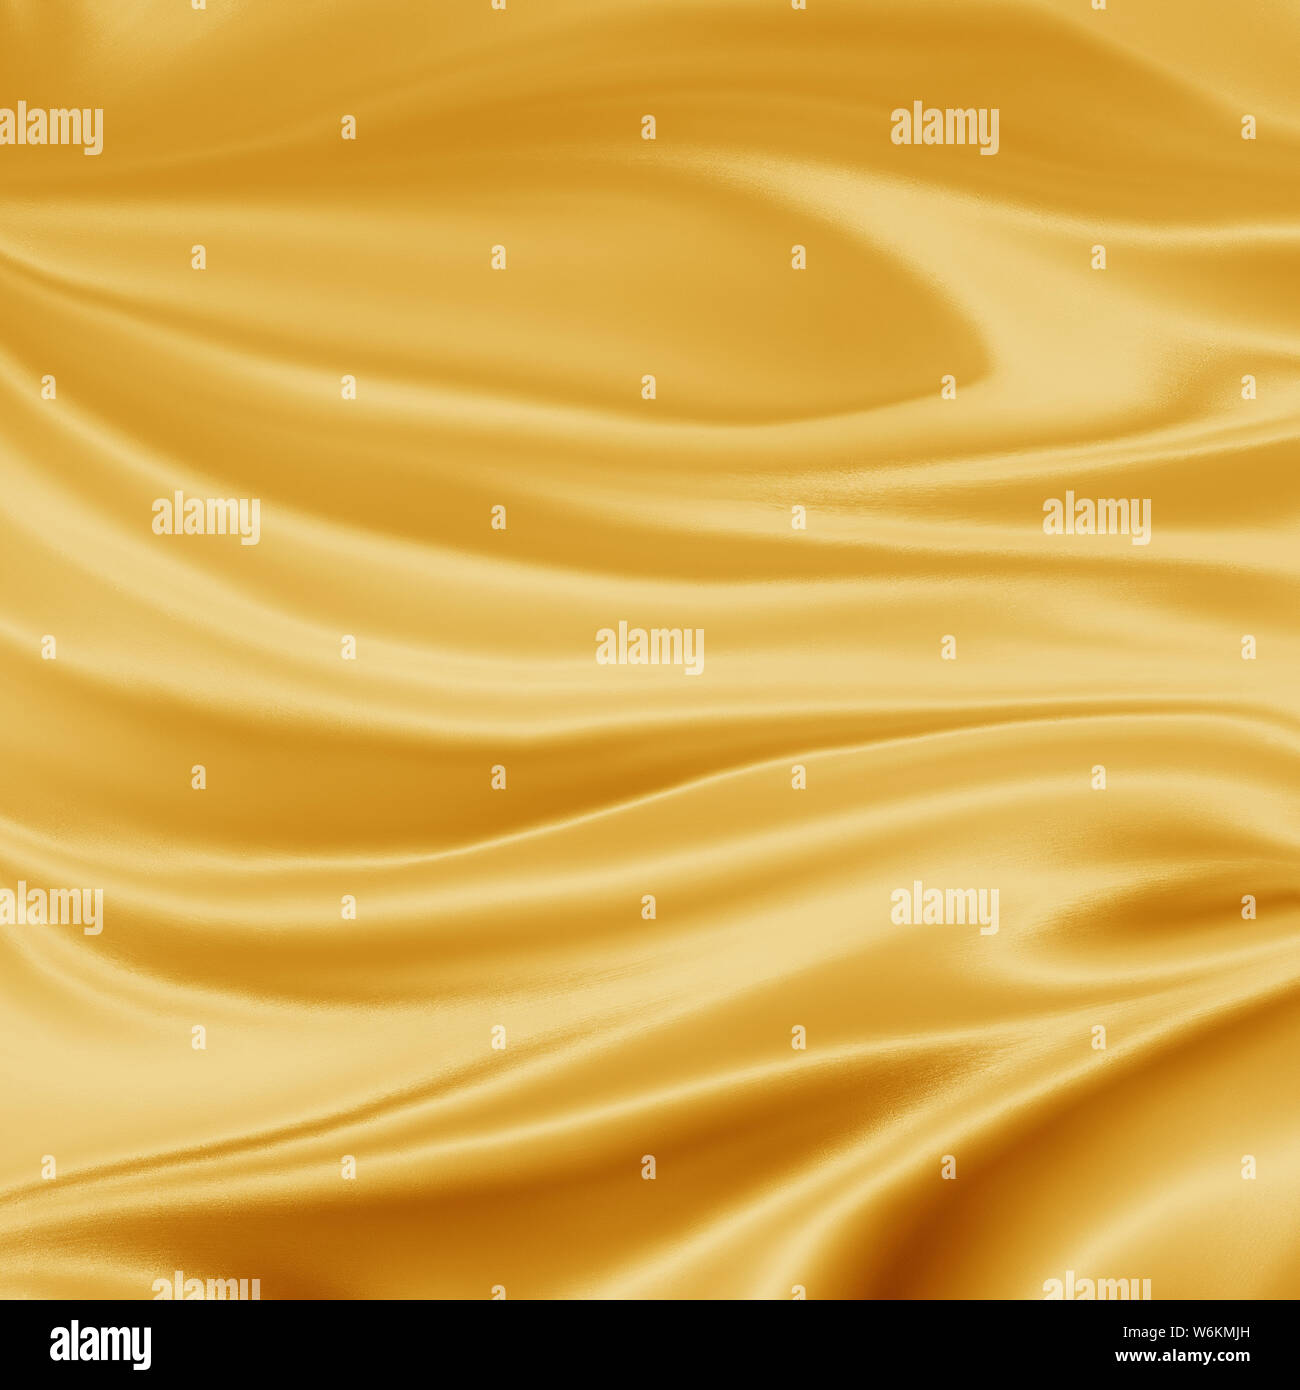 Luxe élégant background illustration or jaune avec plis de tissu drapé ondulé et lisse la texture de la soie avec les rides et les plis en fluide Banque D'Images